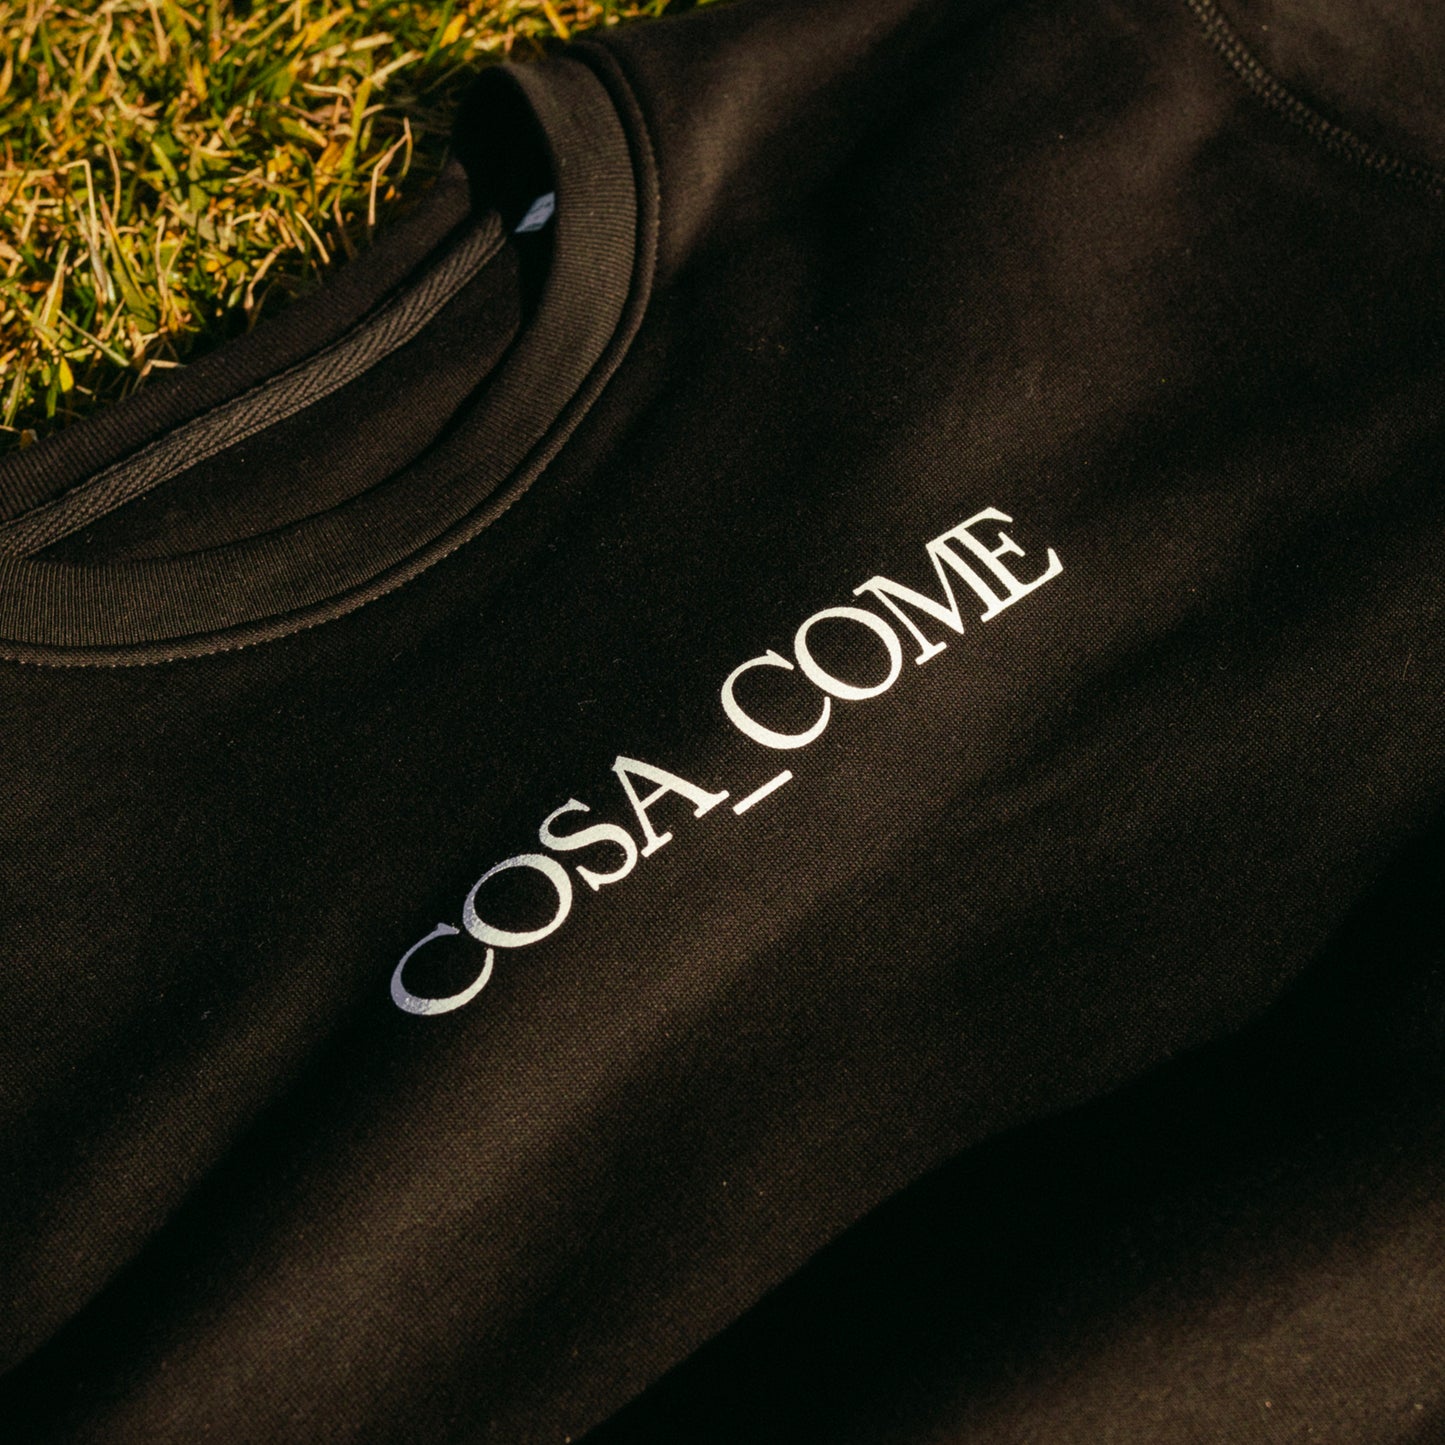 COMA_COSE / FELPA COSA COME [Limited Edition]